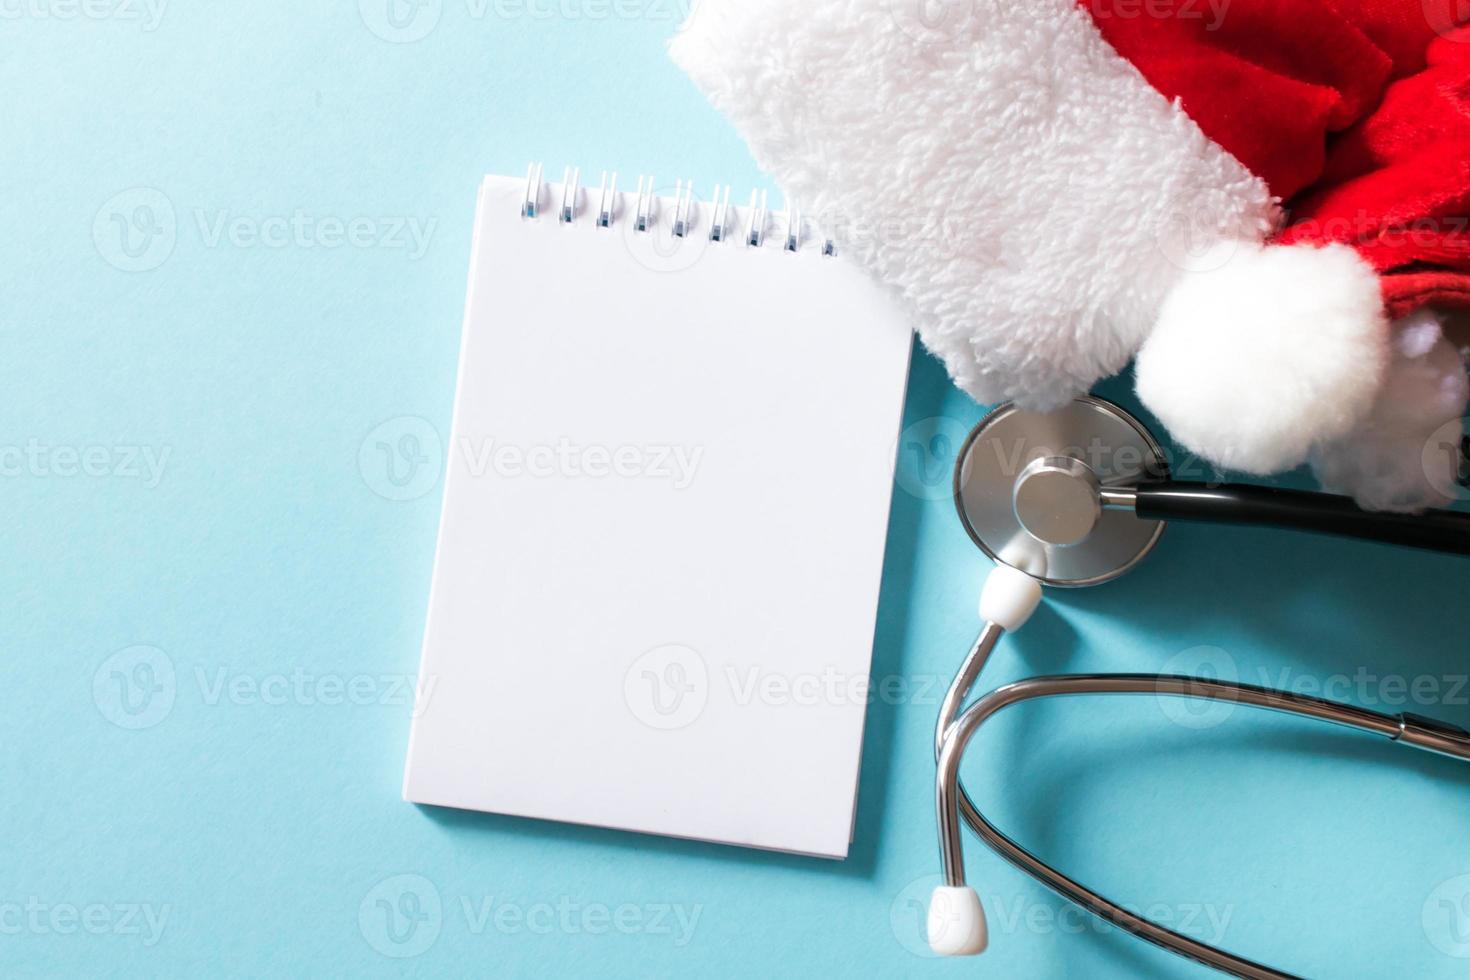 medizinische weihnachts- und neujahrskomposition mit stethoskop, notizblock und weihnachtsmütze auf blauem hintergrund. gesundheits- und medizinkonzept für karte, kalender, cover. foto